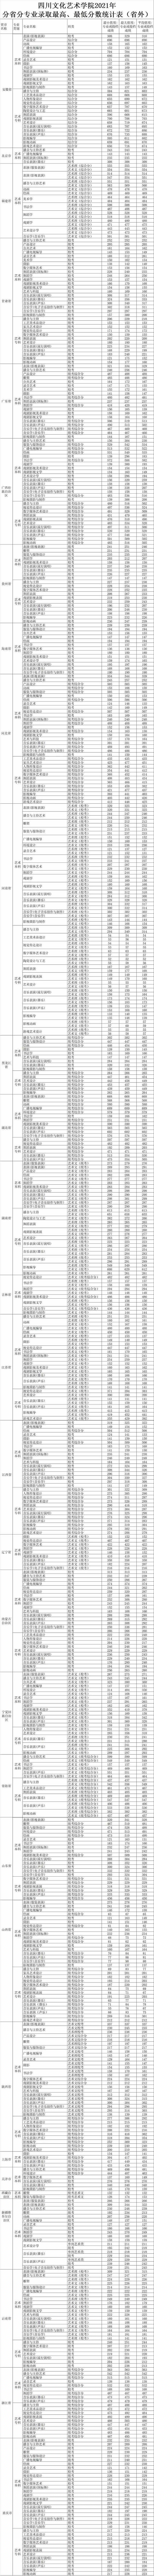 四川文化艺术学院2021年省外艺术类本科专业录取分数线